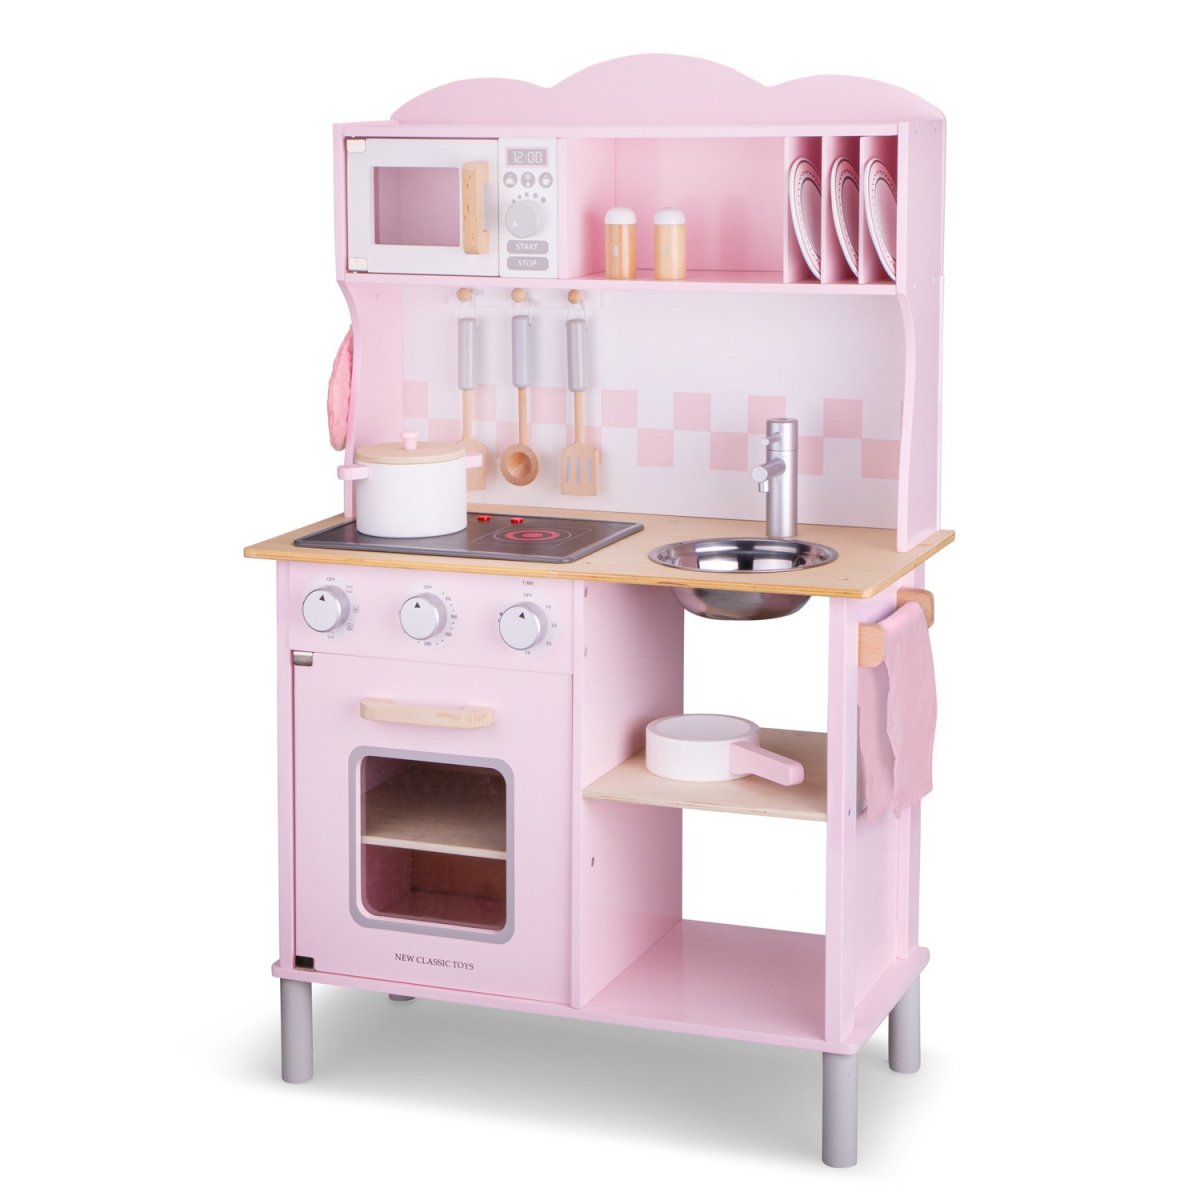 Игровой набор New Classic Toys Кухня Modern, розовый (11067) - фото 2